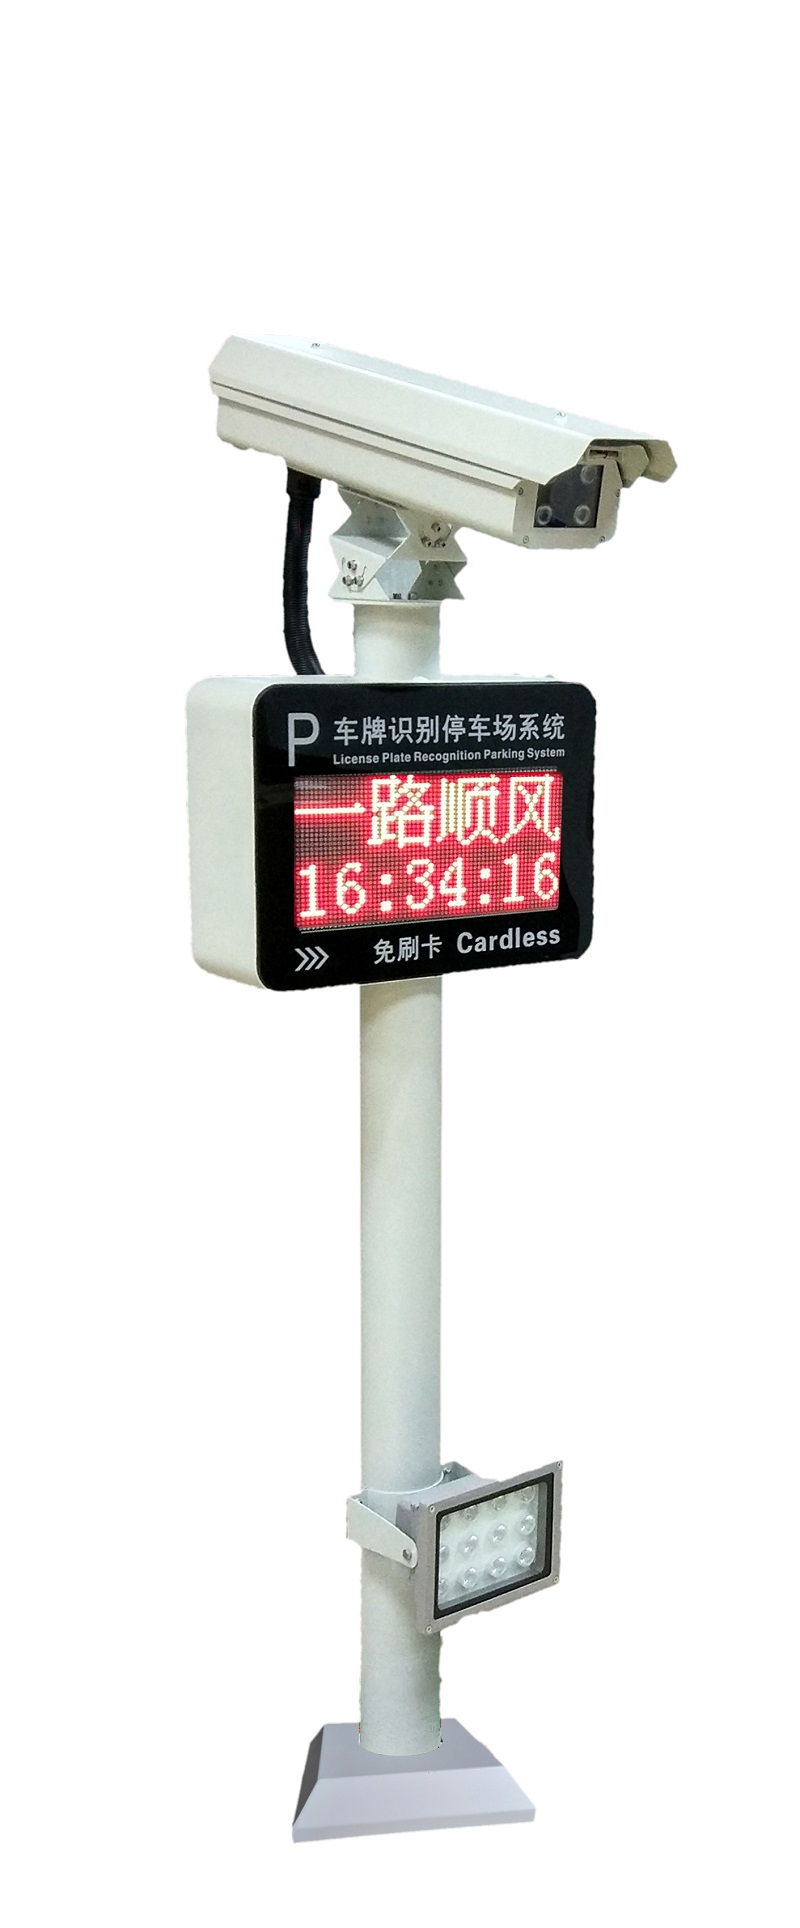 重庆车辆识别停车场系统